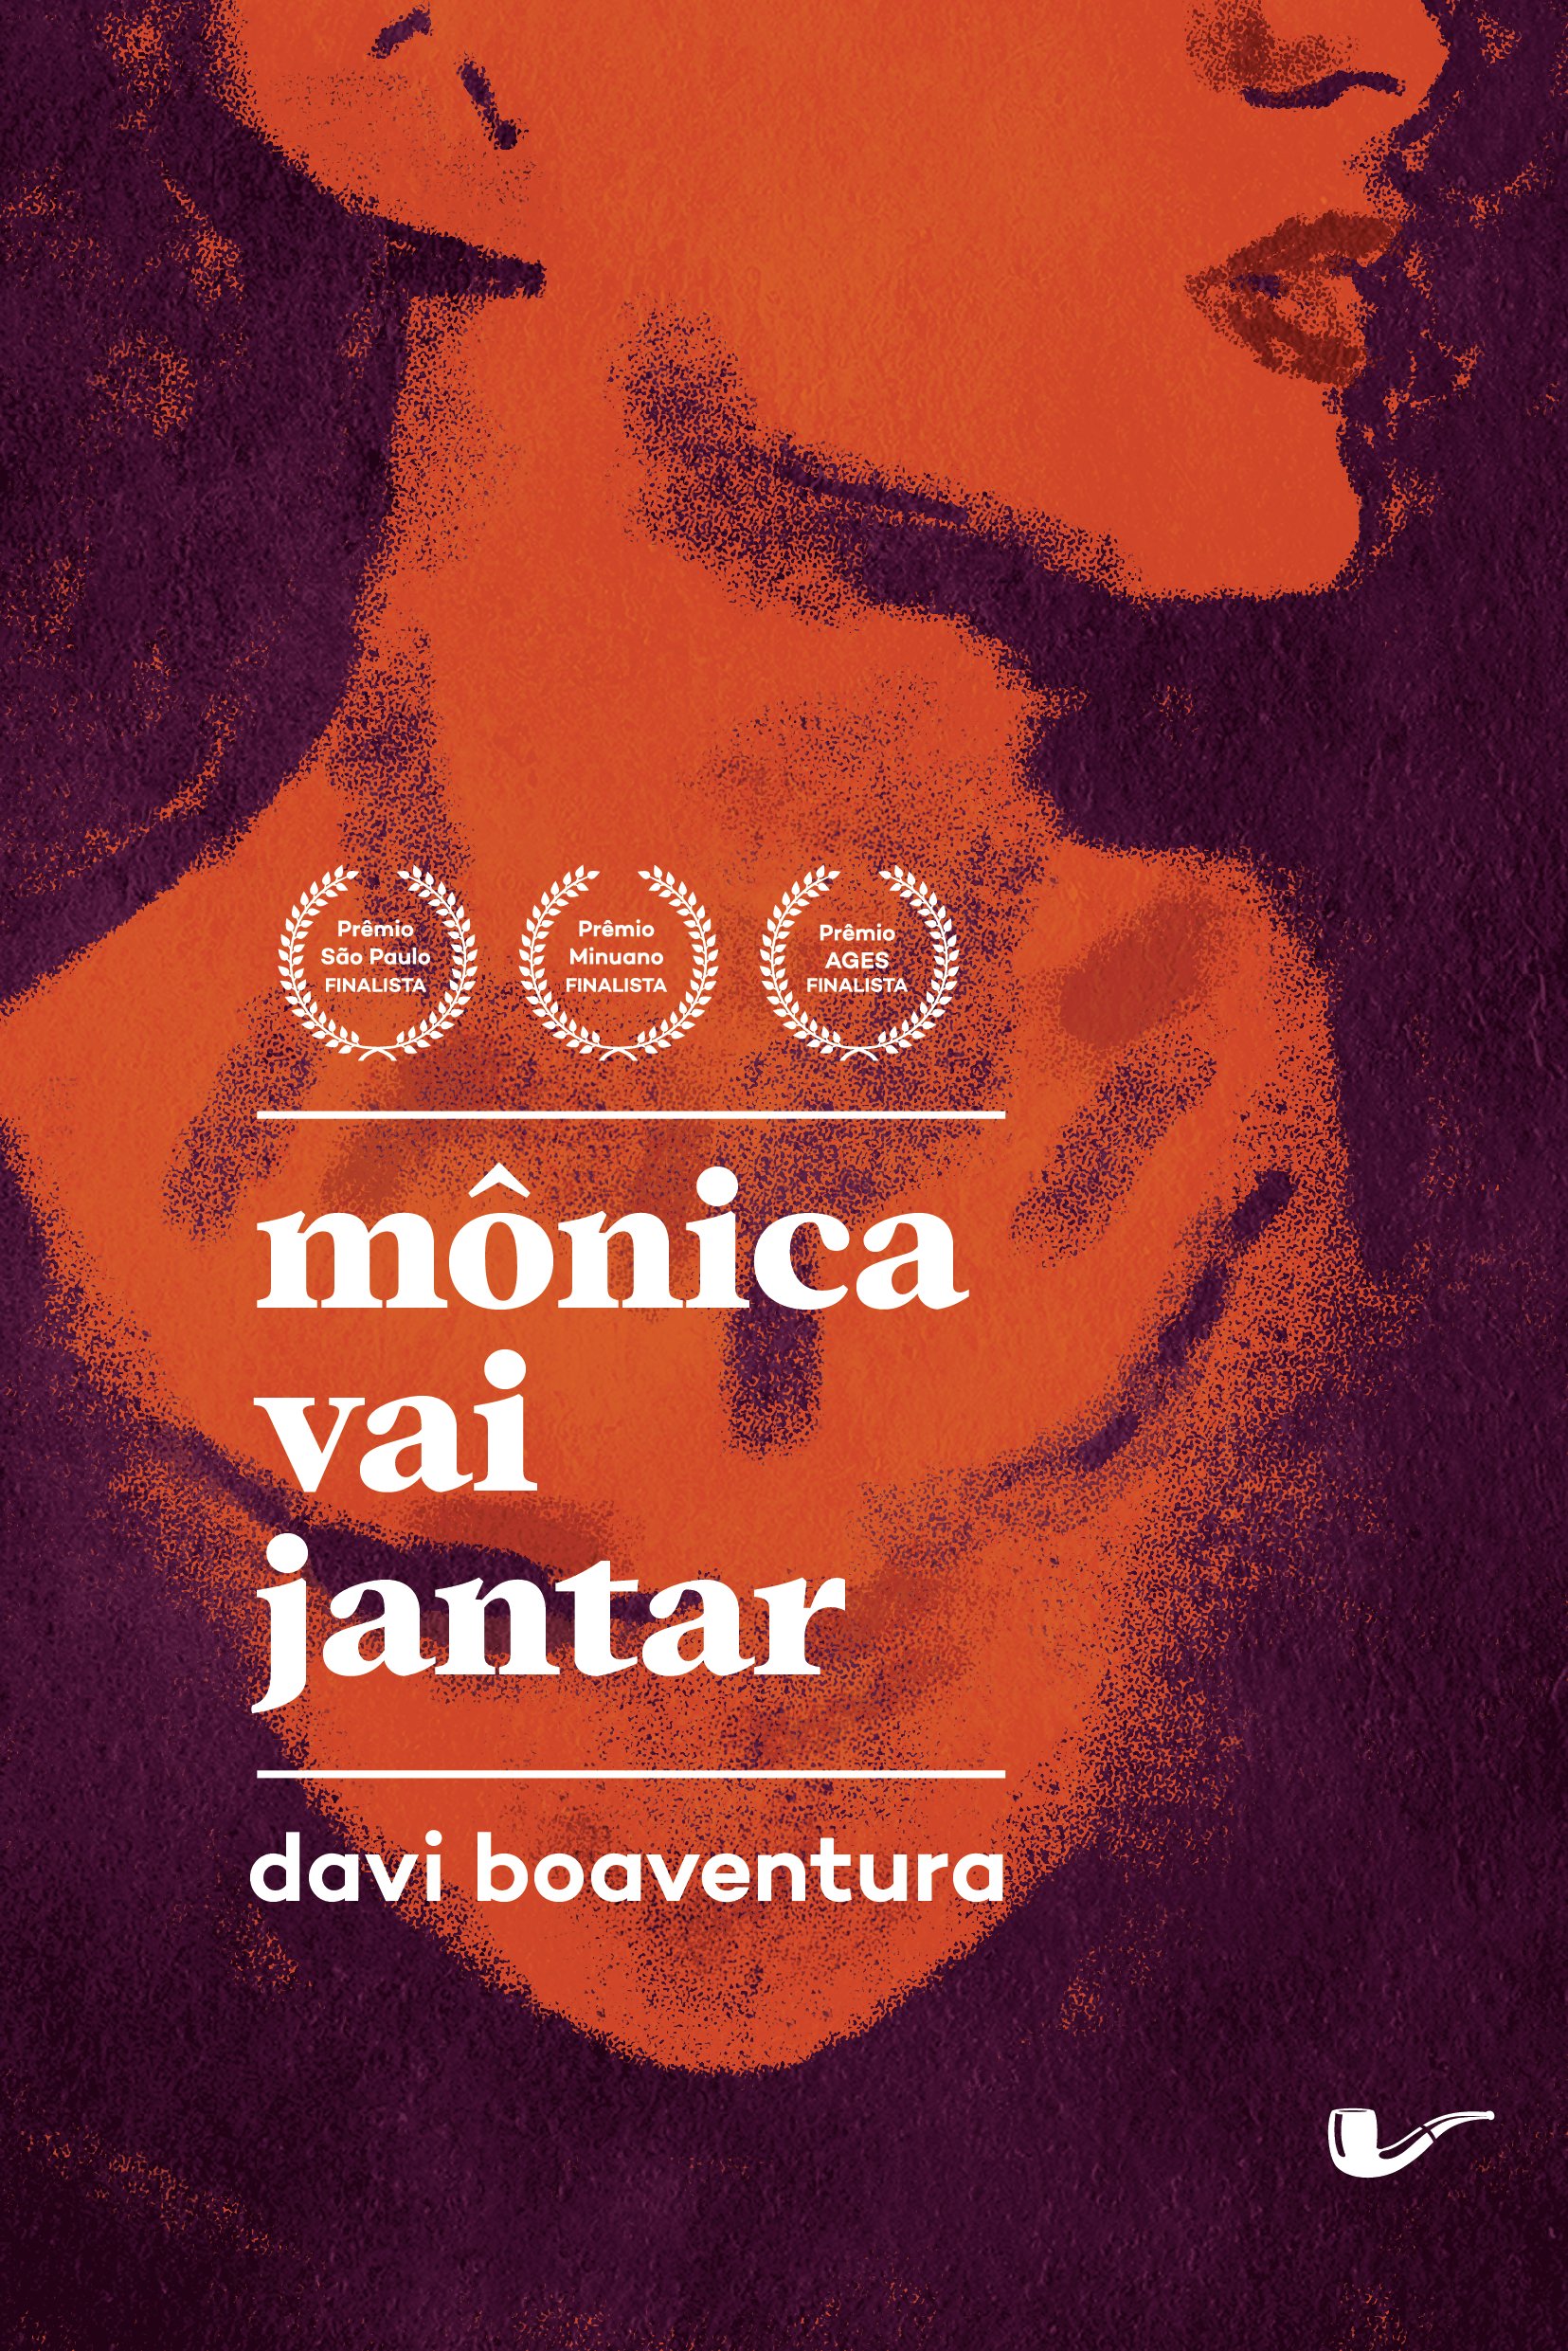 Davi Boaventura - mônica vai Jantar (davi boaventura, não editora, 2019, resenha) por Guilherme Preger